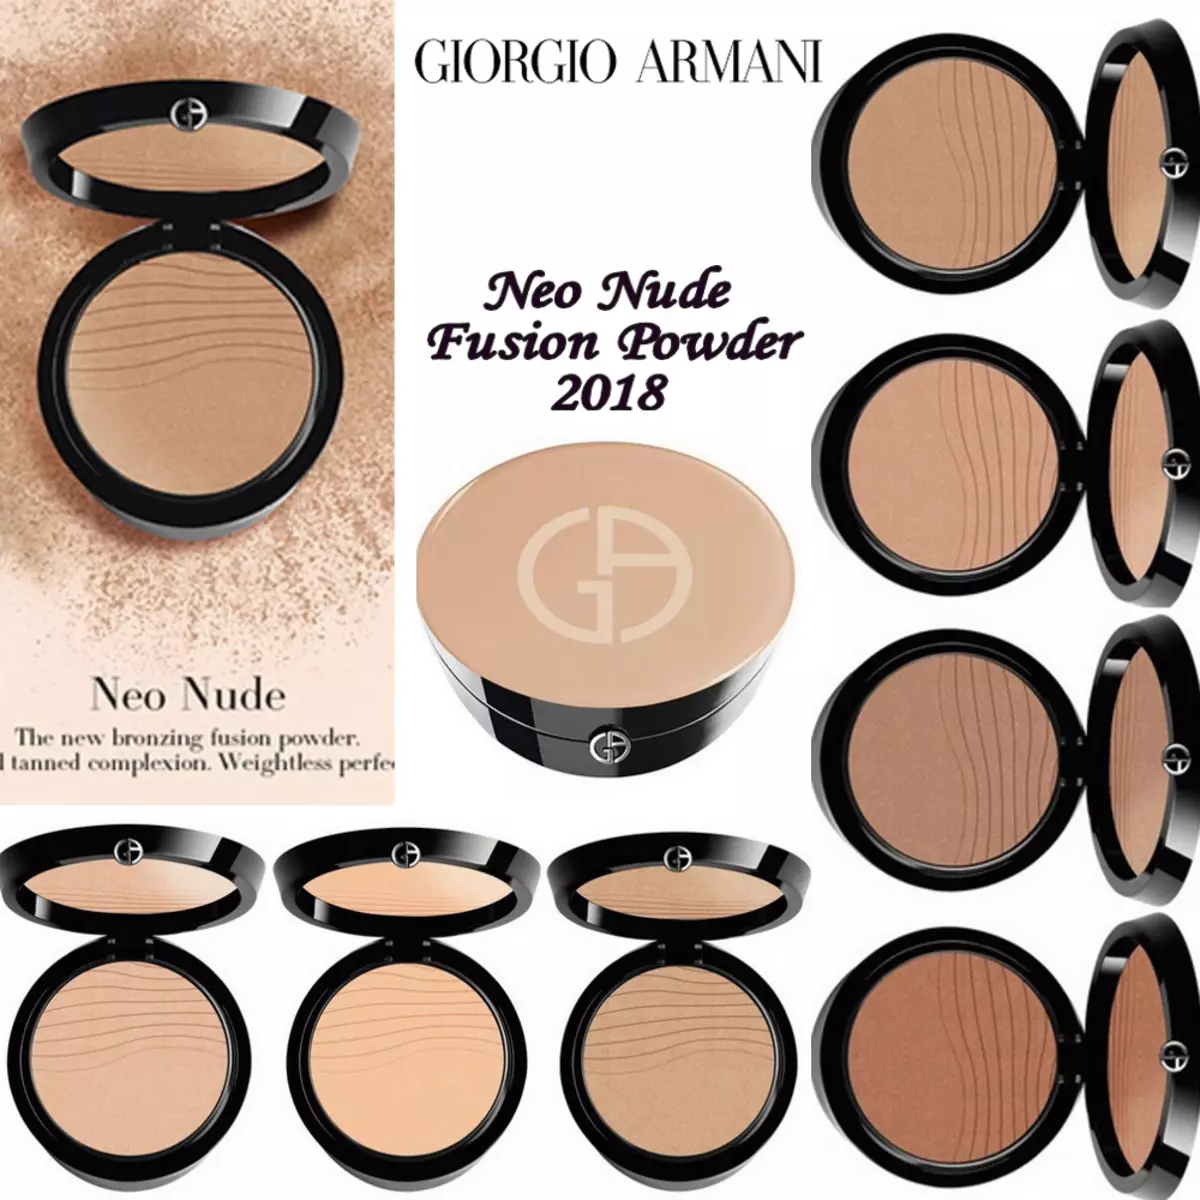 لوازم آرایشی Giorgio Armani: بررسی لوازم آرایشی تزئینی، جوانب مثبت و منفی، انتخاب 4906_11